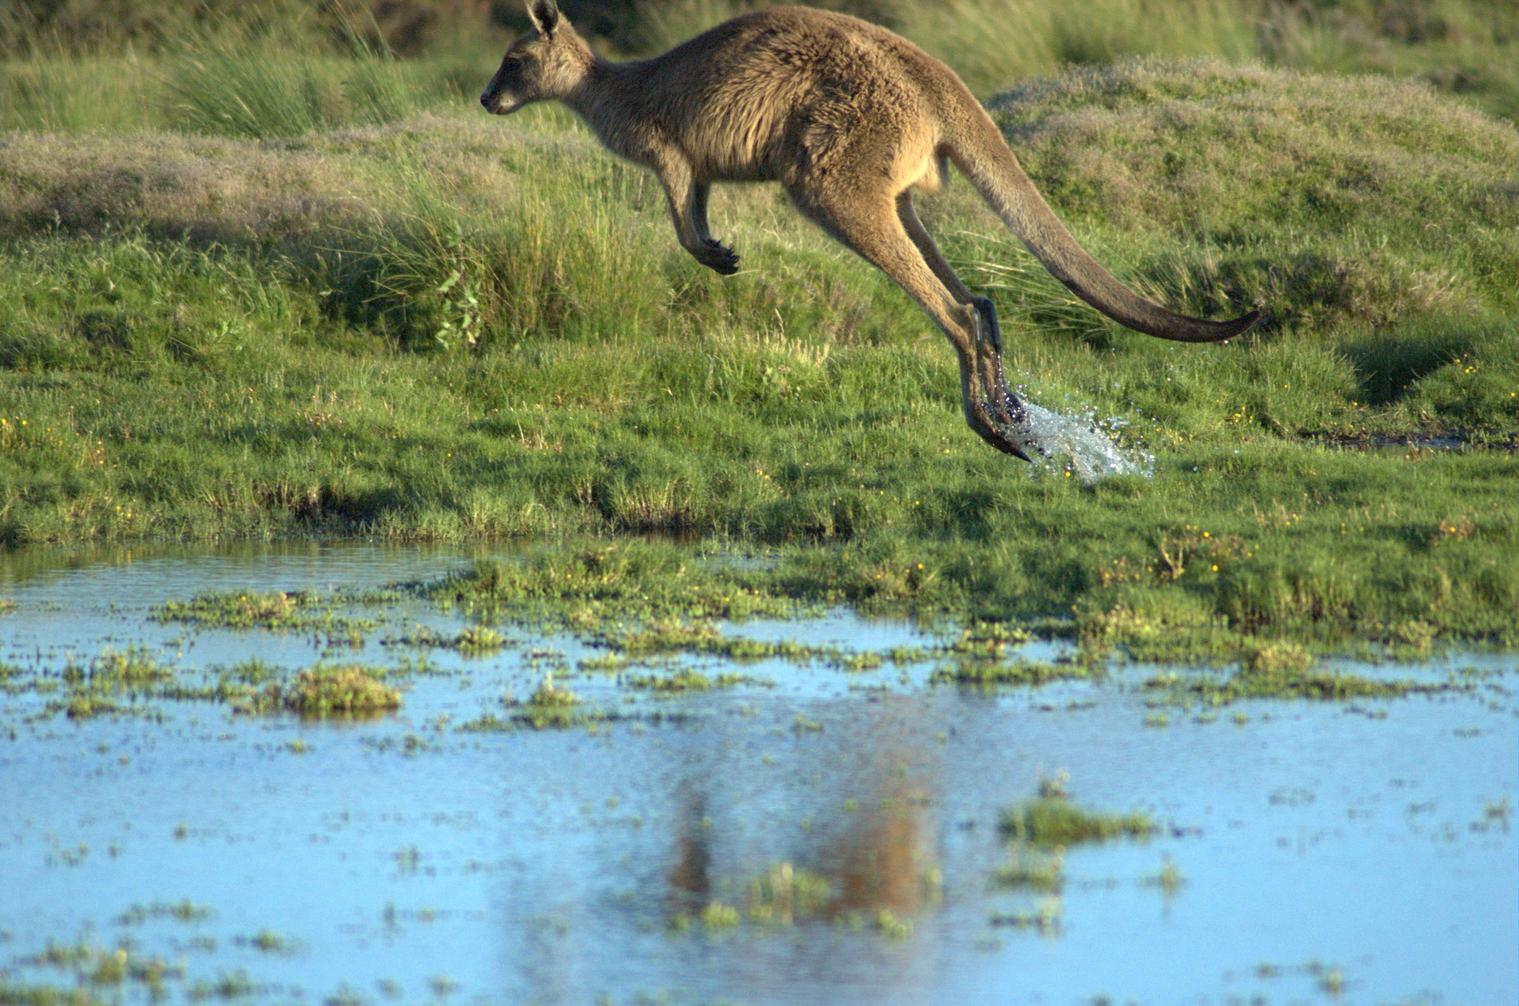 Kangaroo In Flight